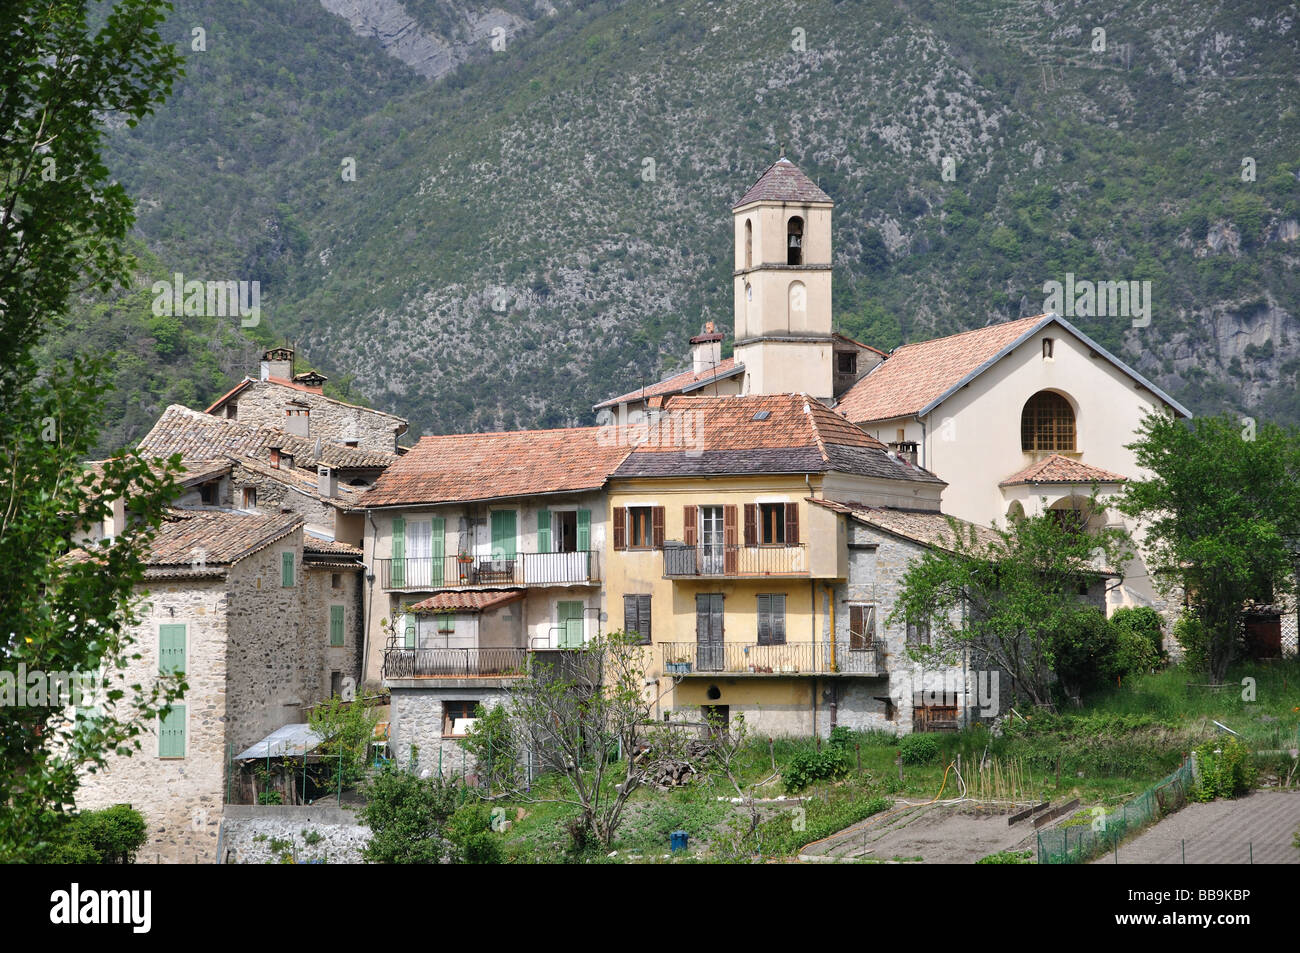 Le village de montagne de Marie sur Tinee dans les Alpes Maritimes, France Banque D'Images